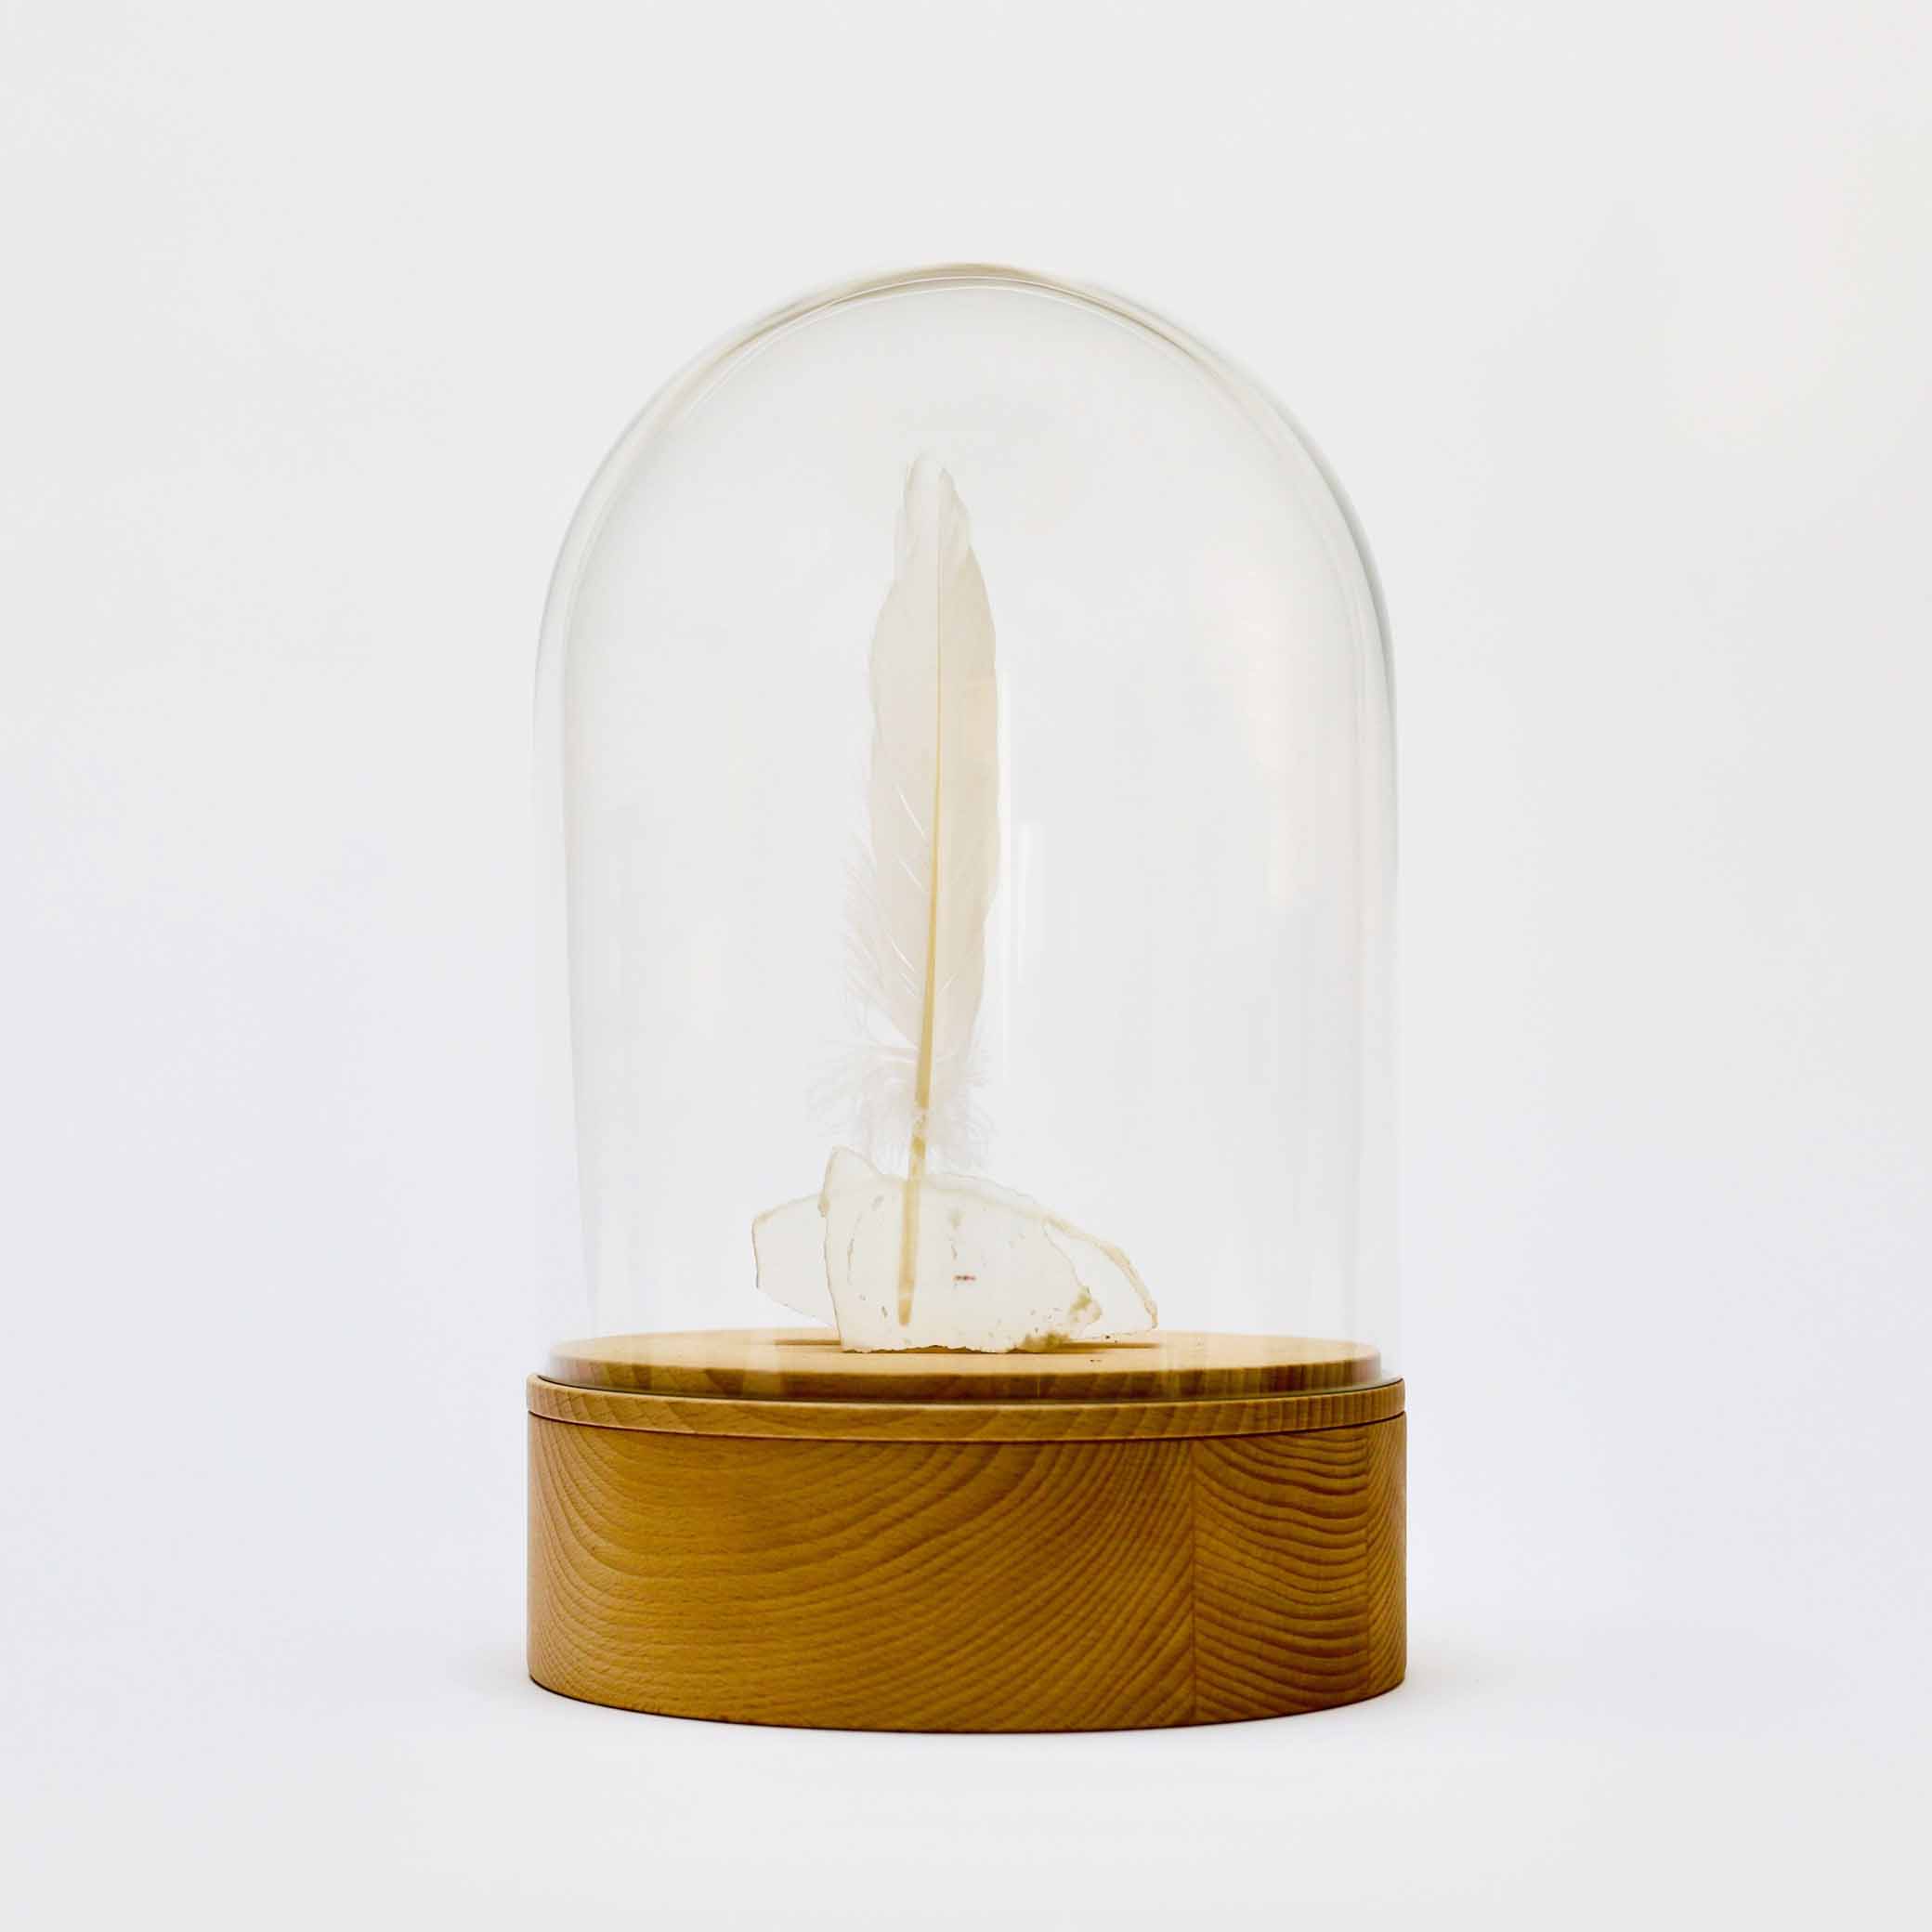 Houten design urn met glazen stolp en witte veer